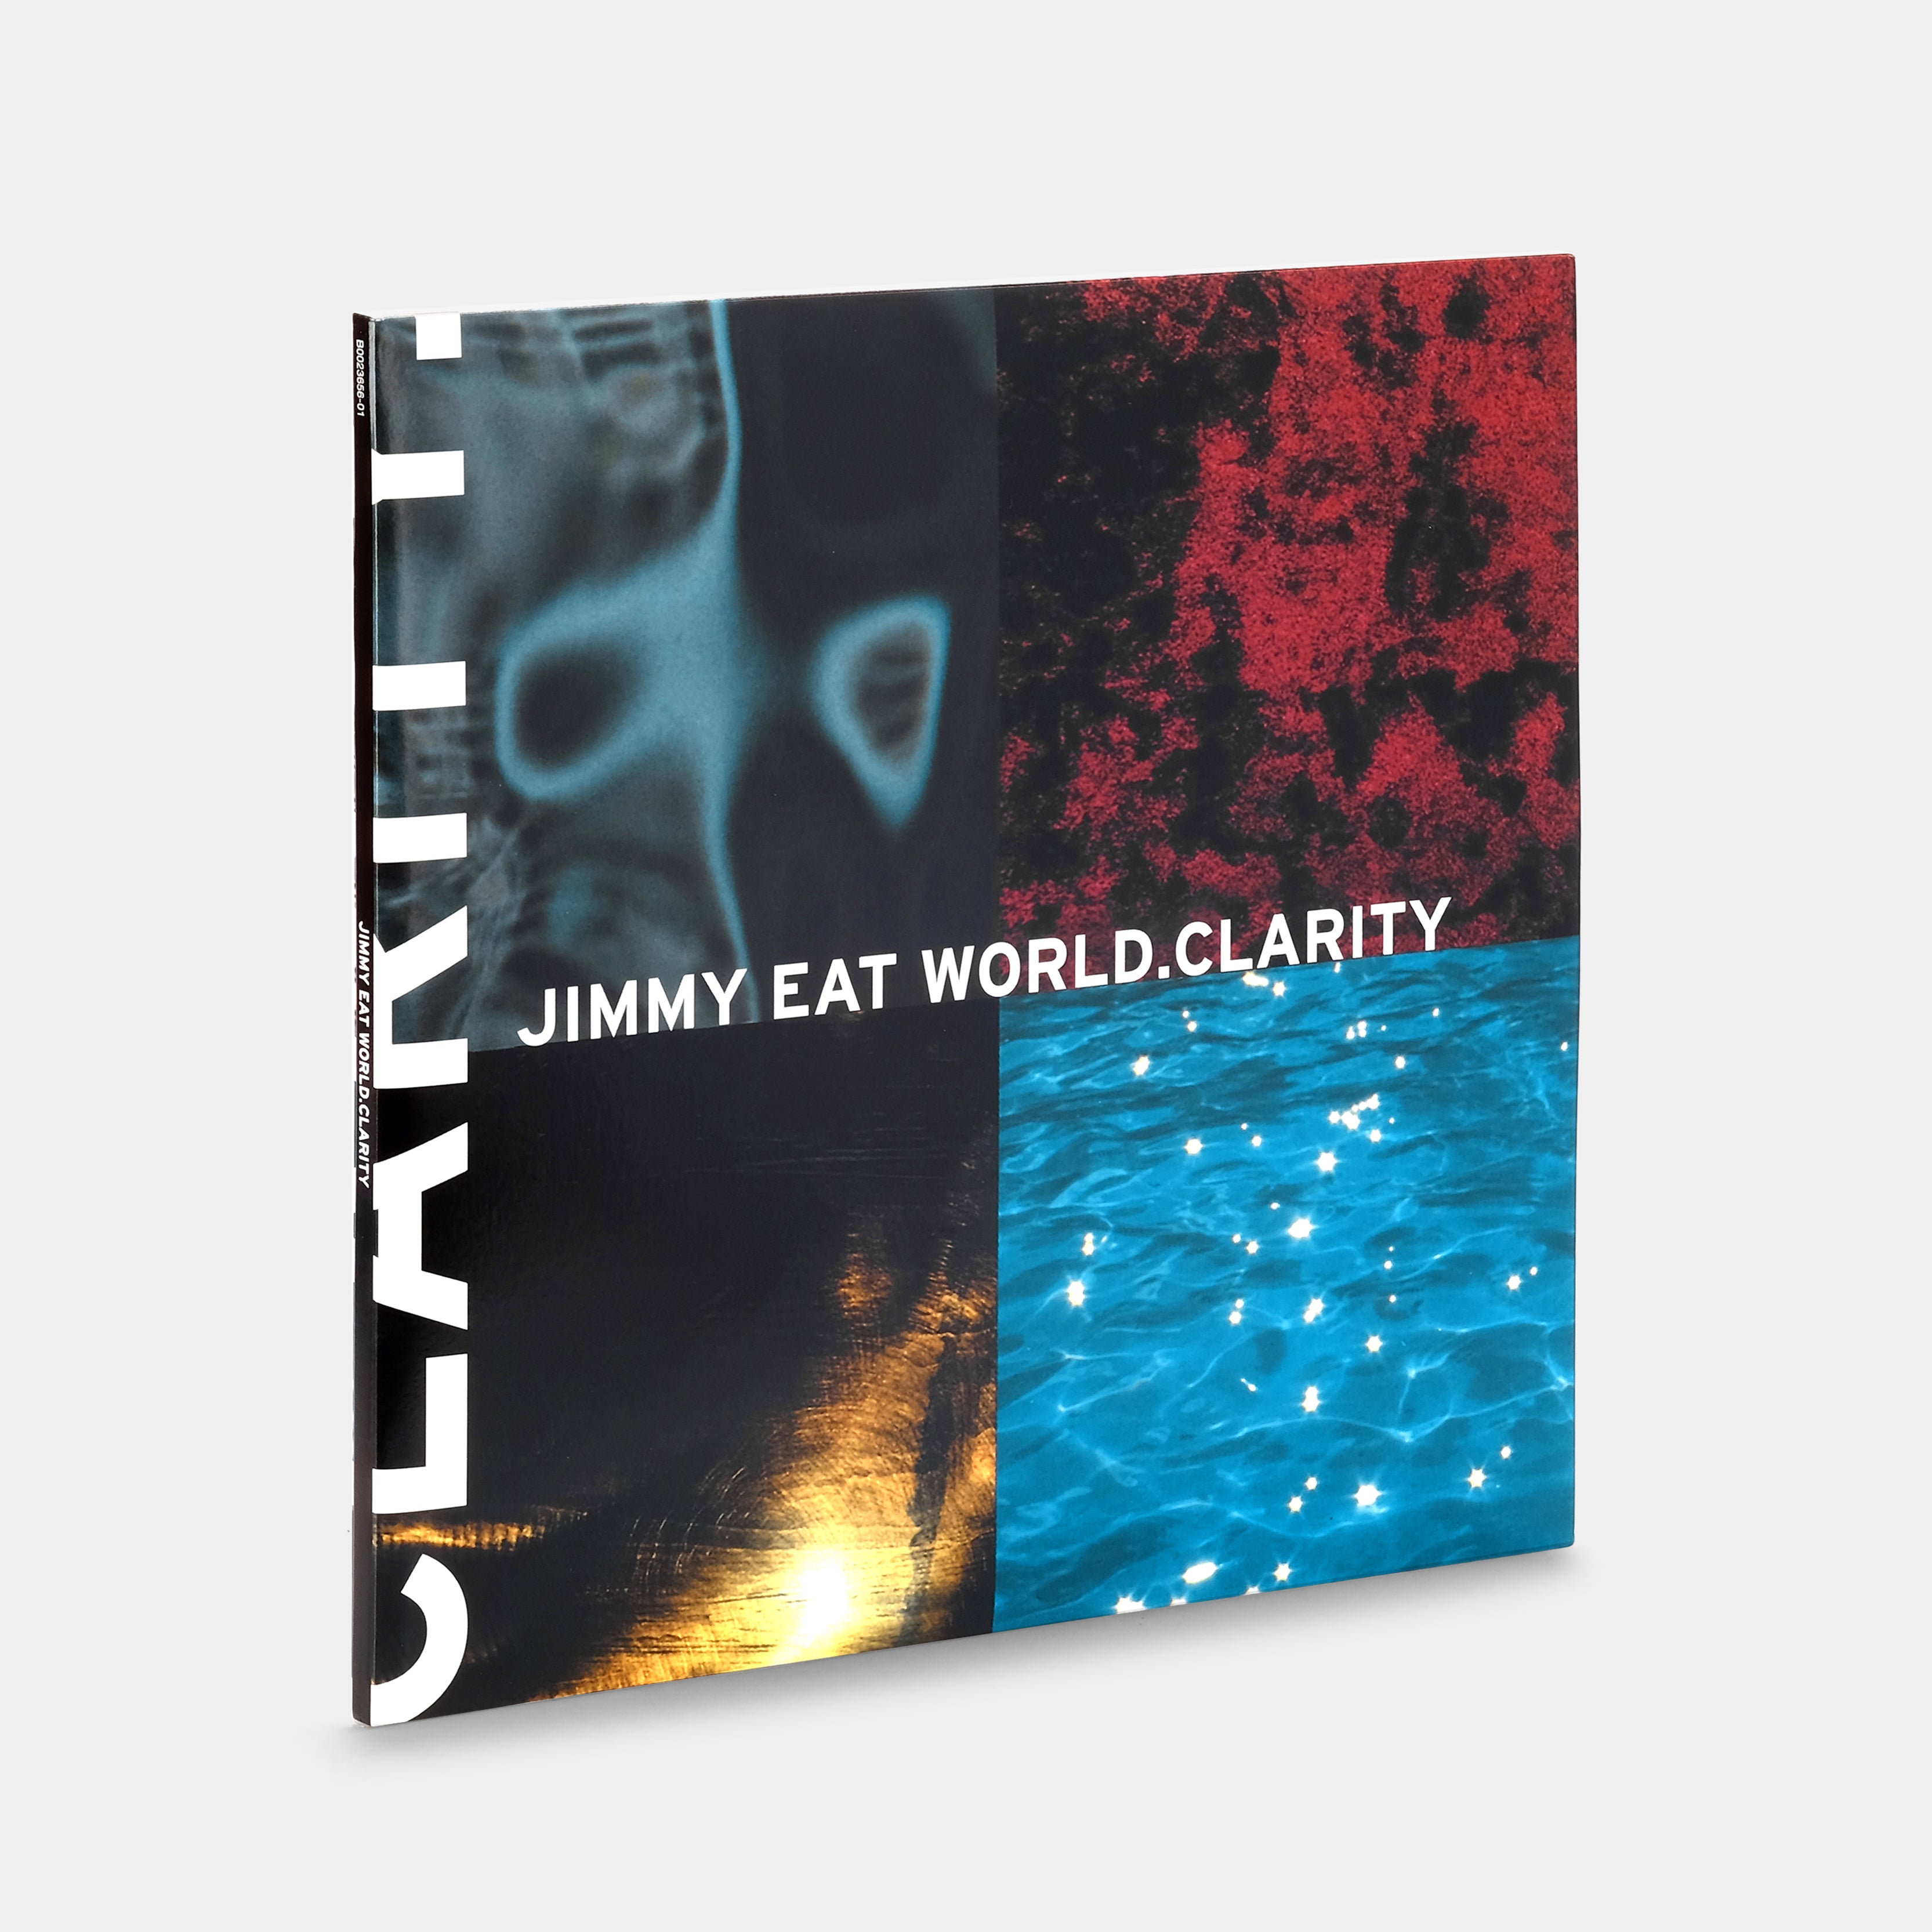 Jimmy Eat World - Clarity 2xLP Vinyl Record